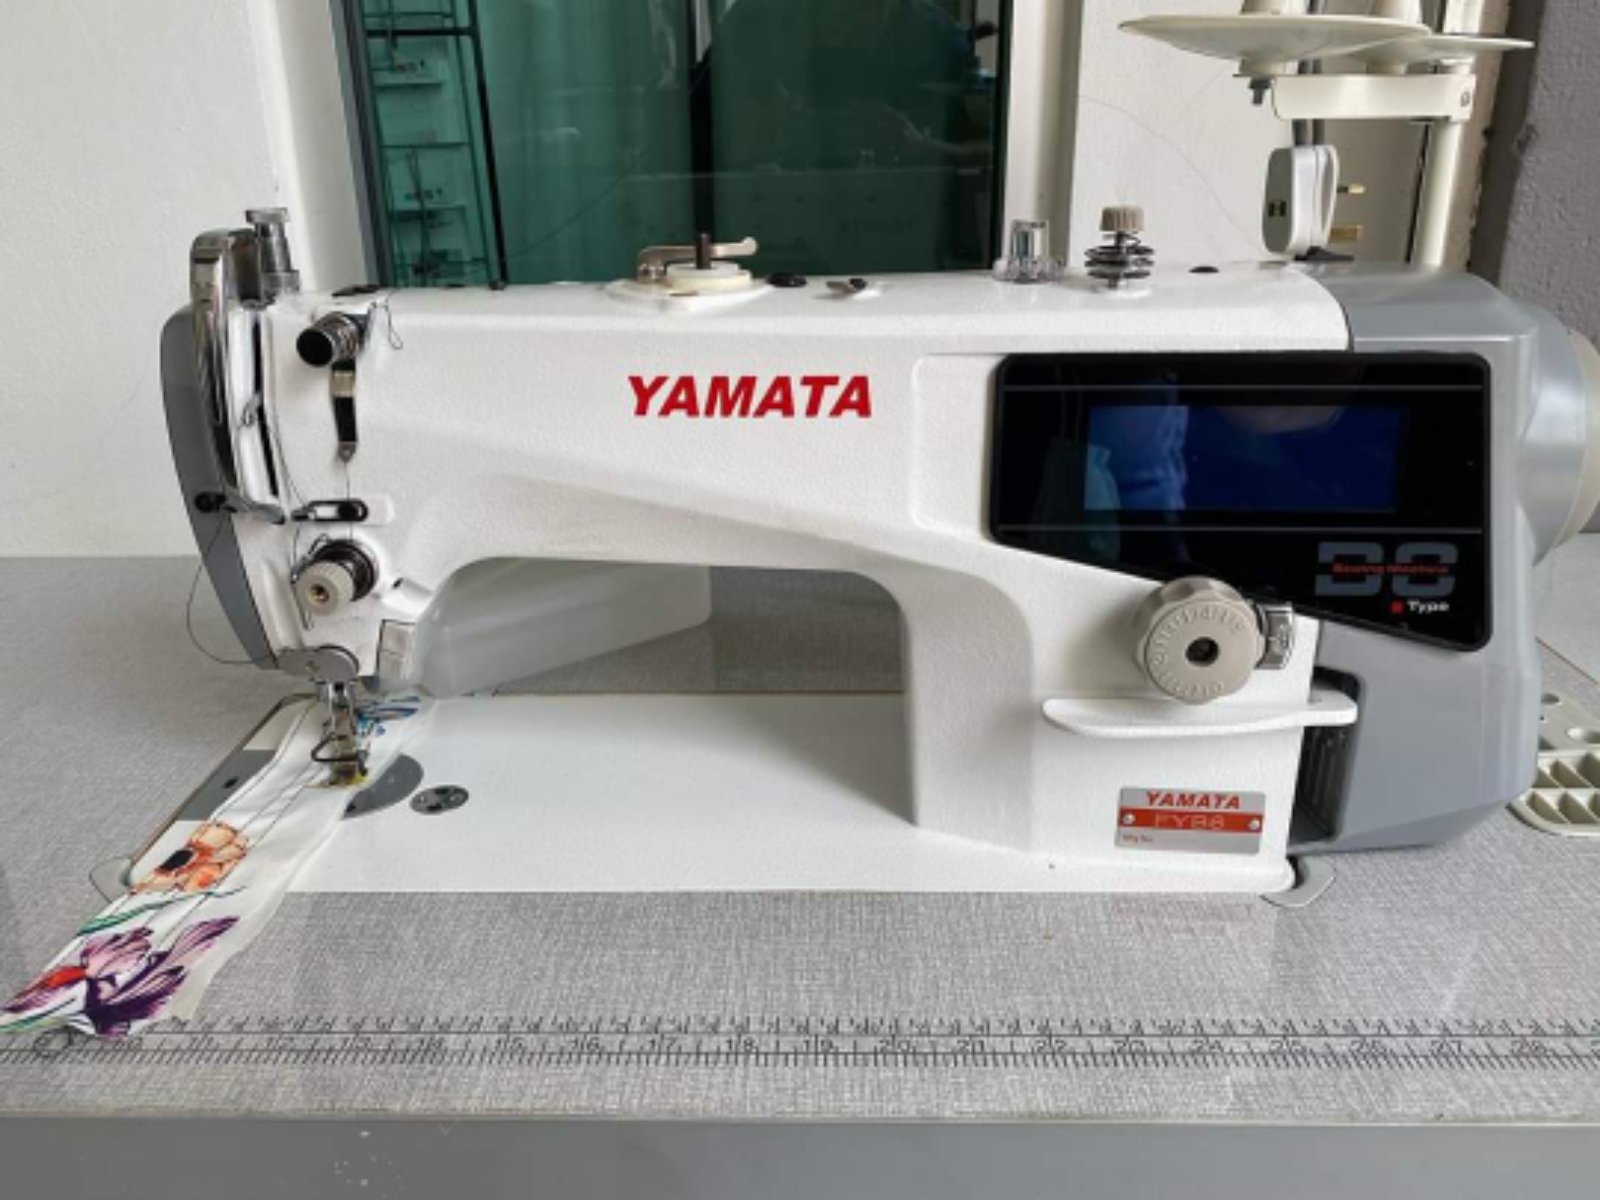 Yamata Automatik Direct Drive Motor Hi Speed Sewing machine 